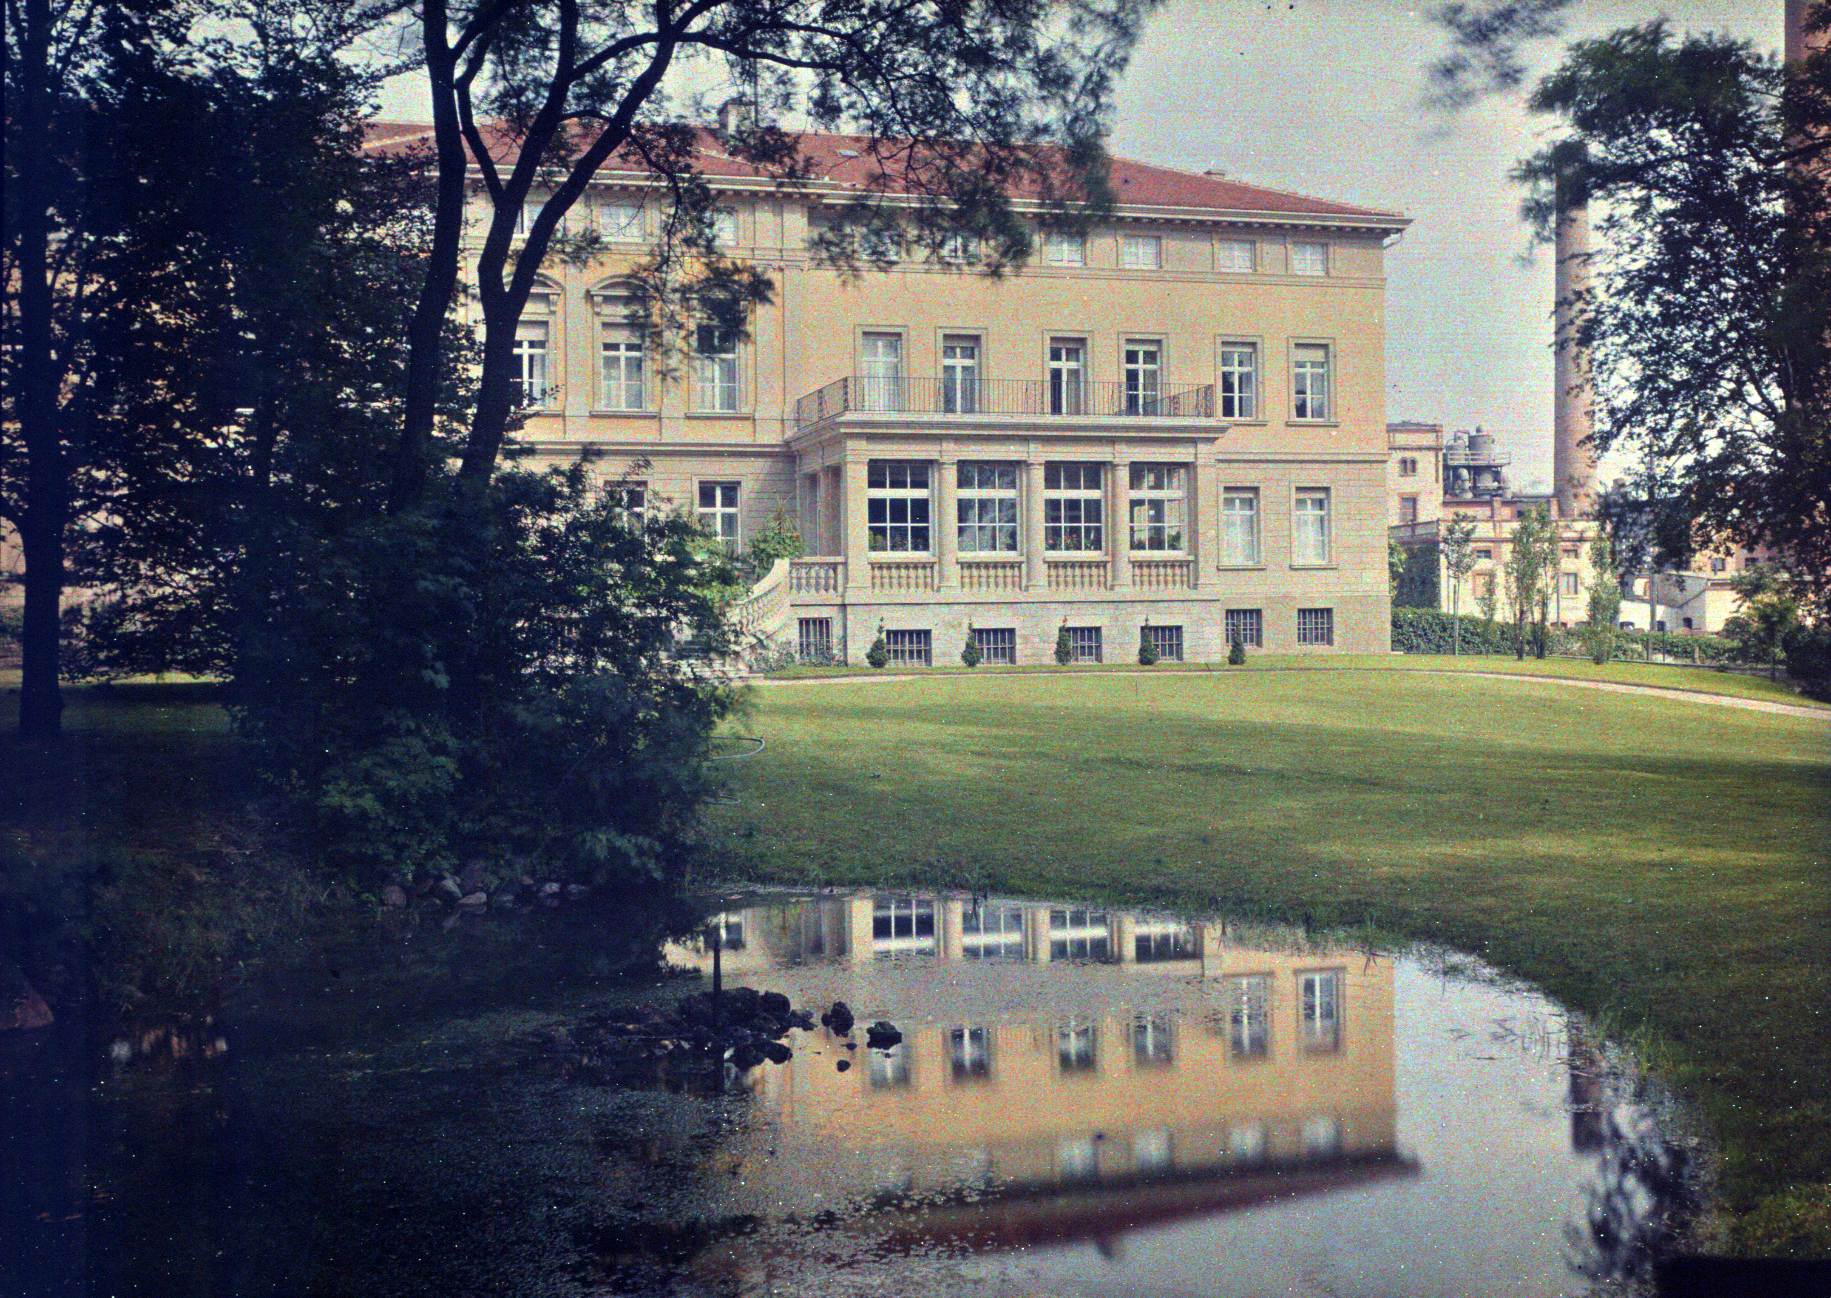 Villa Giesecke, built in 1869 in classicist style in Klein Wanzleben